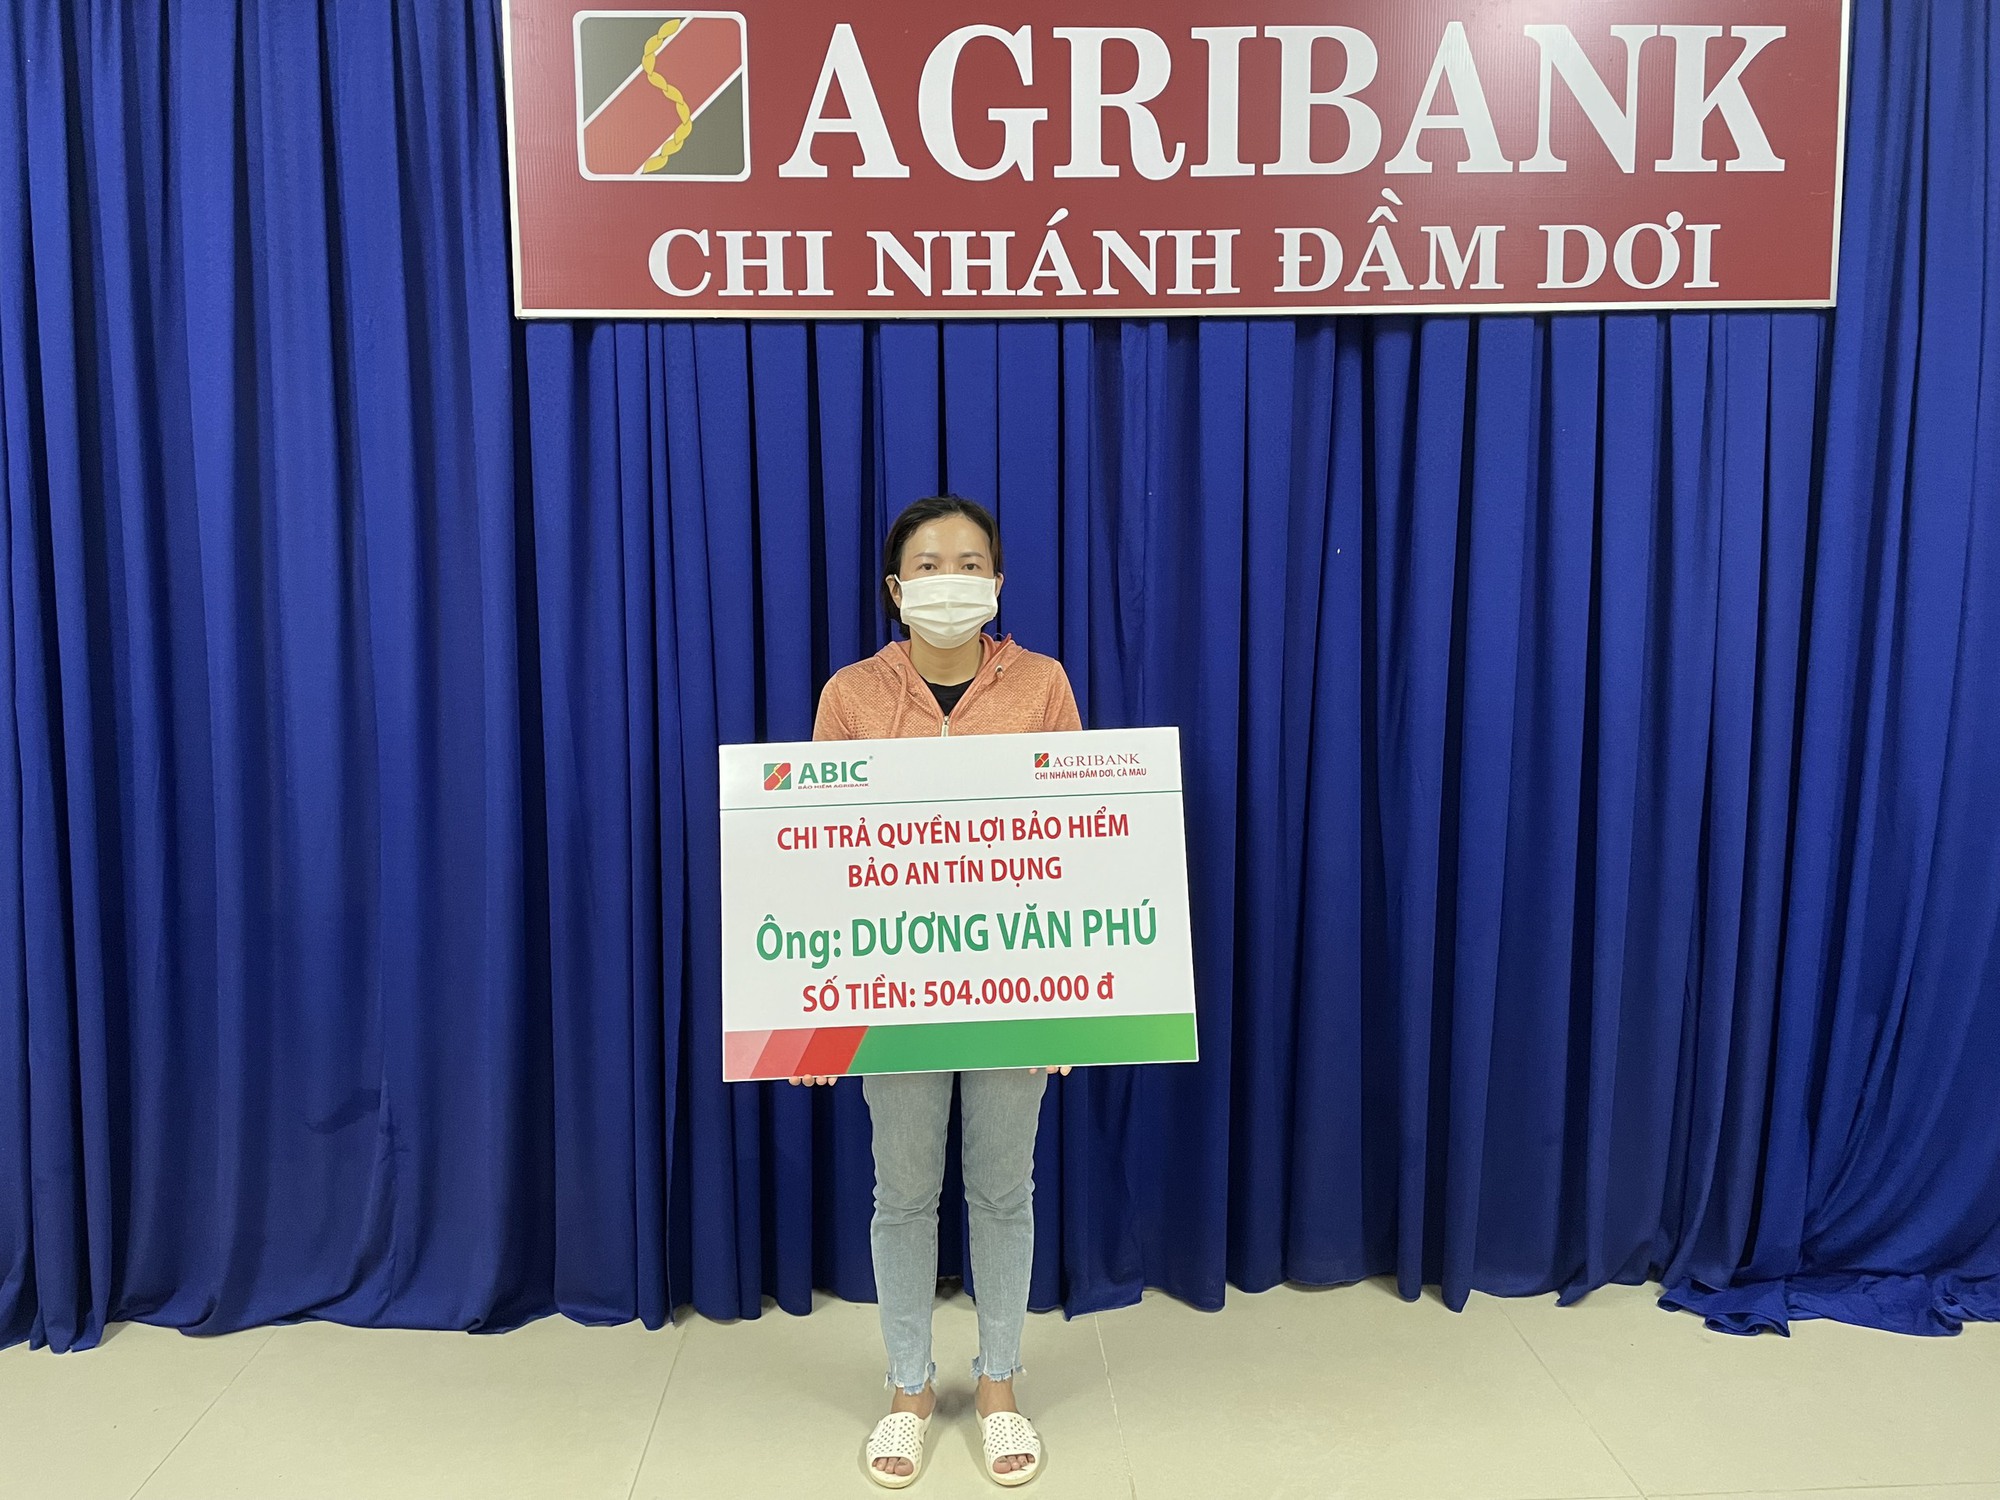 Bảo hiểm Agribank Cần Thơ chi trả bảo hiểm tối đa cho 1 khách hàng tại Cà Mau - Ảnh 2.